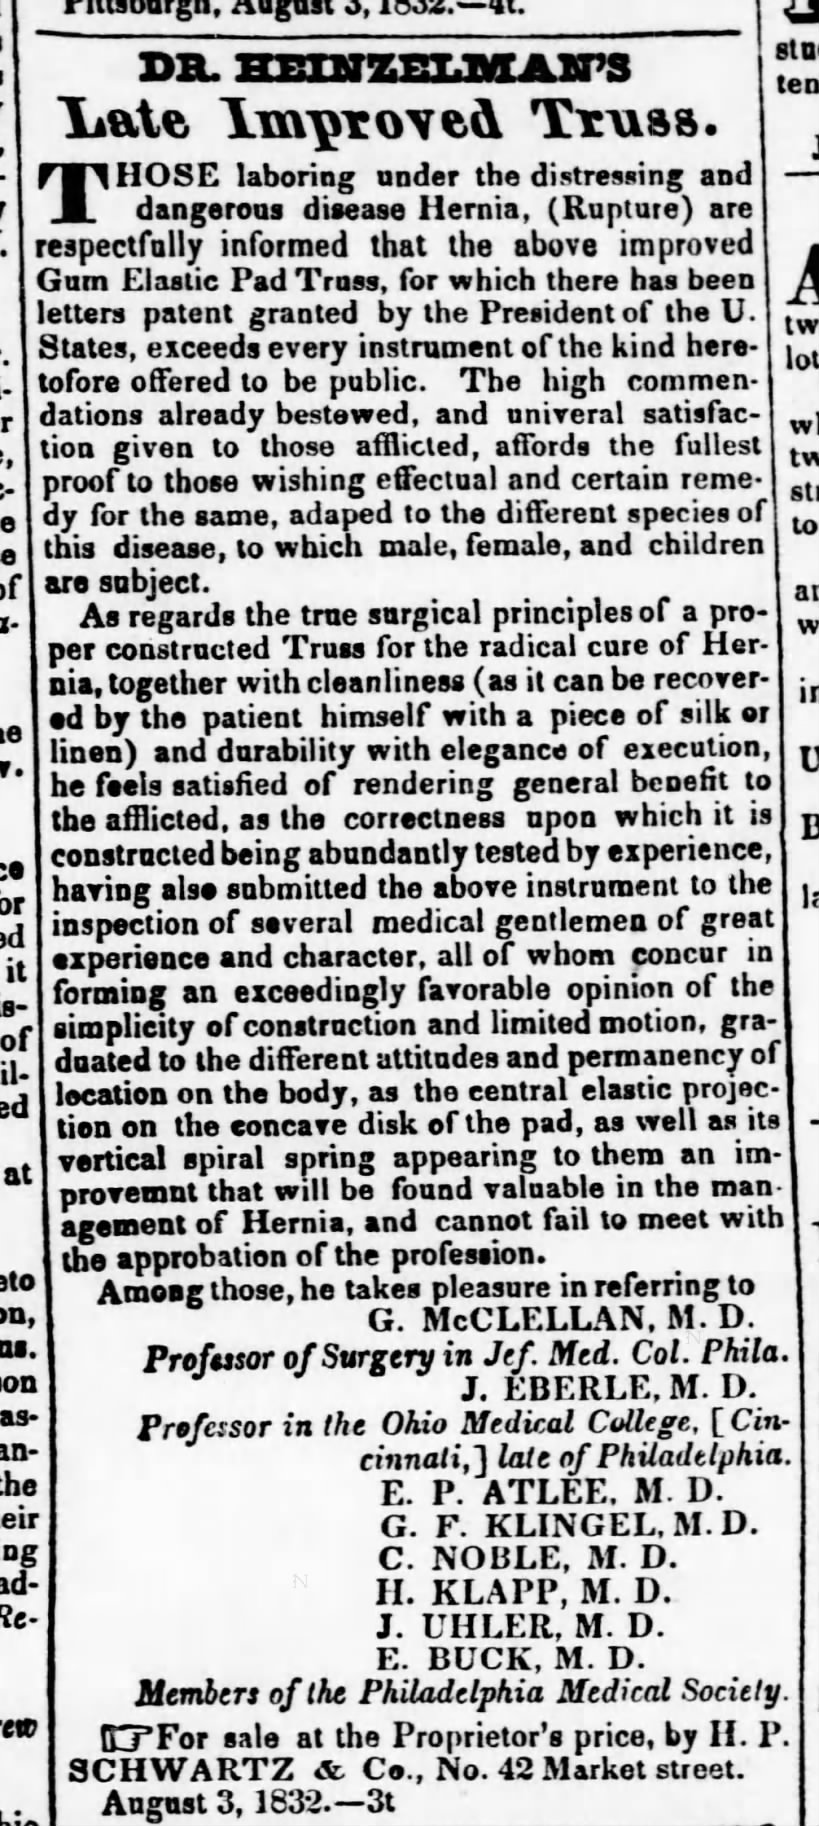 Dr. E. P. Atlee_Philadelphia Medical Society_1832